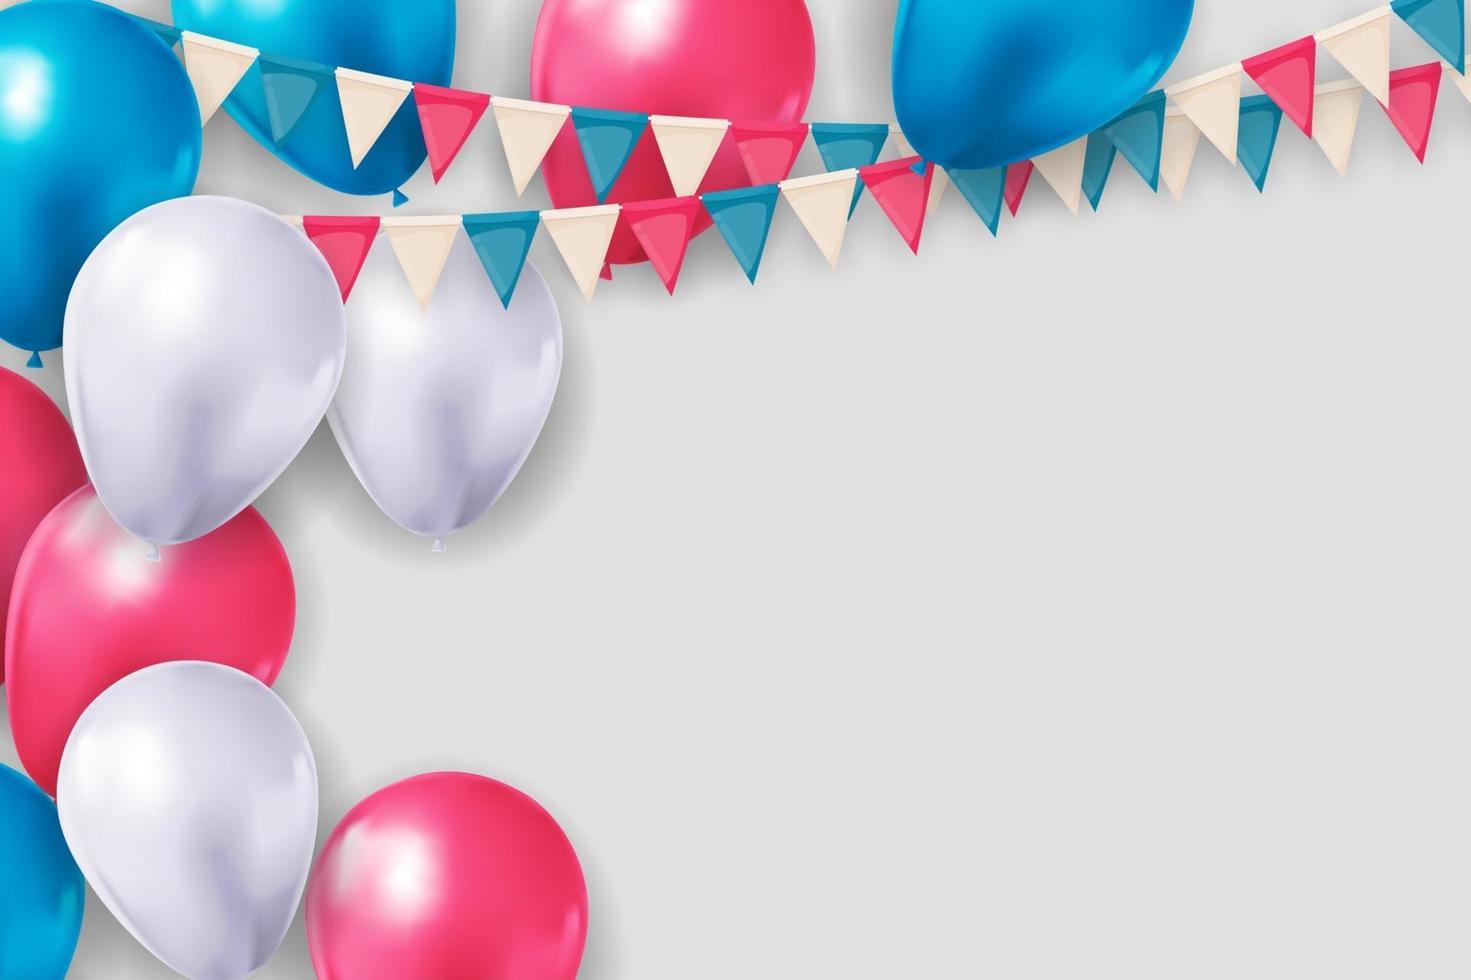 realistische 3d ballonachtergrond voor feest, vakantie, verjaardag, promotiekaart, poster. vector illustratie eps10